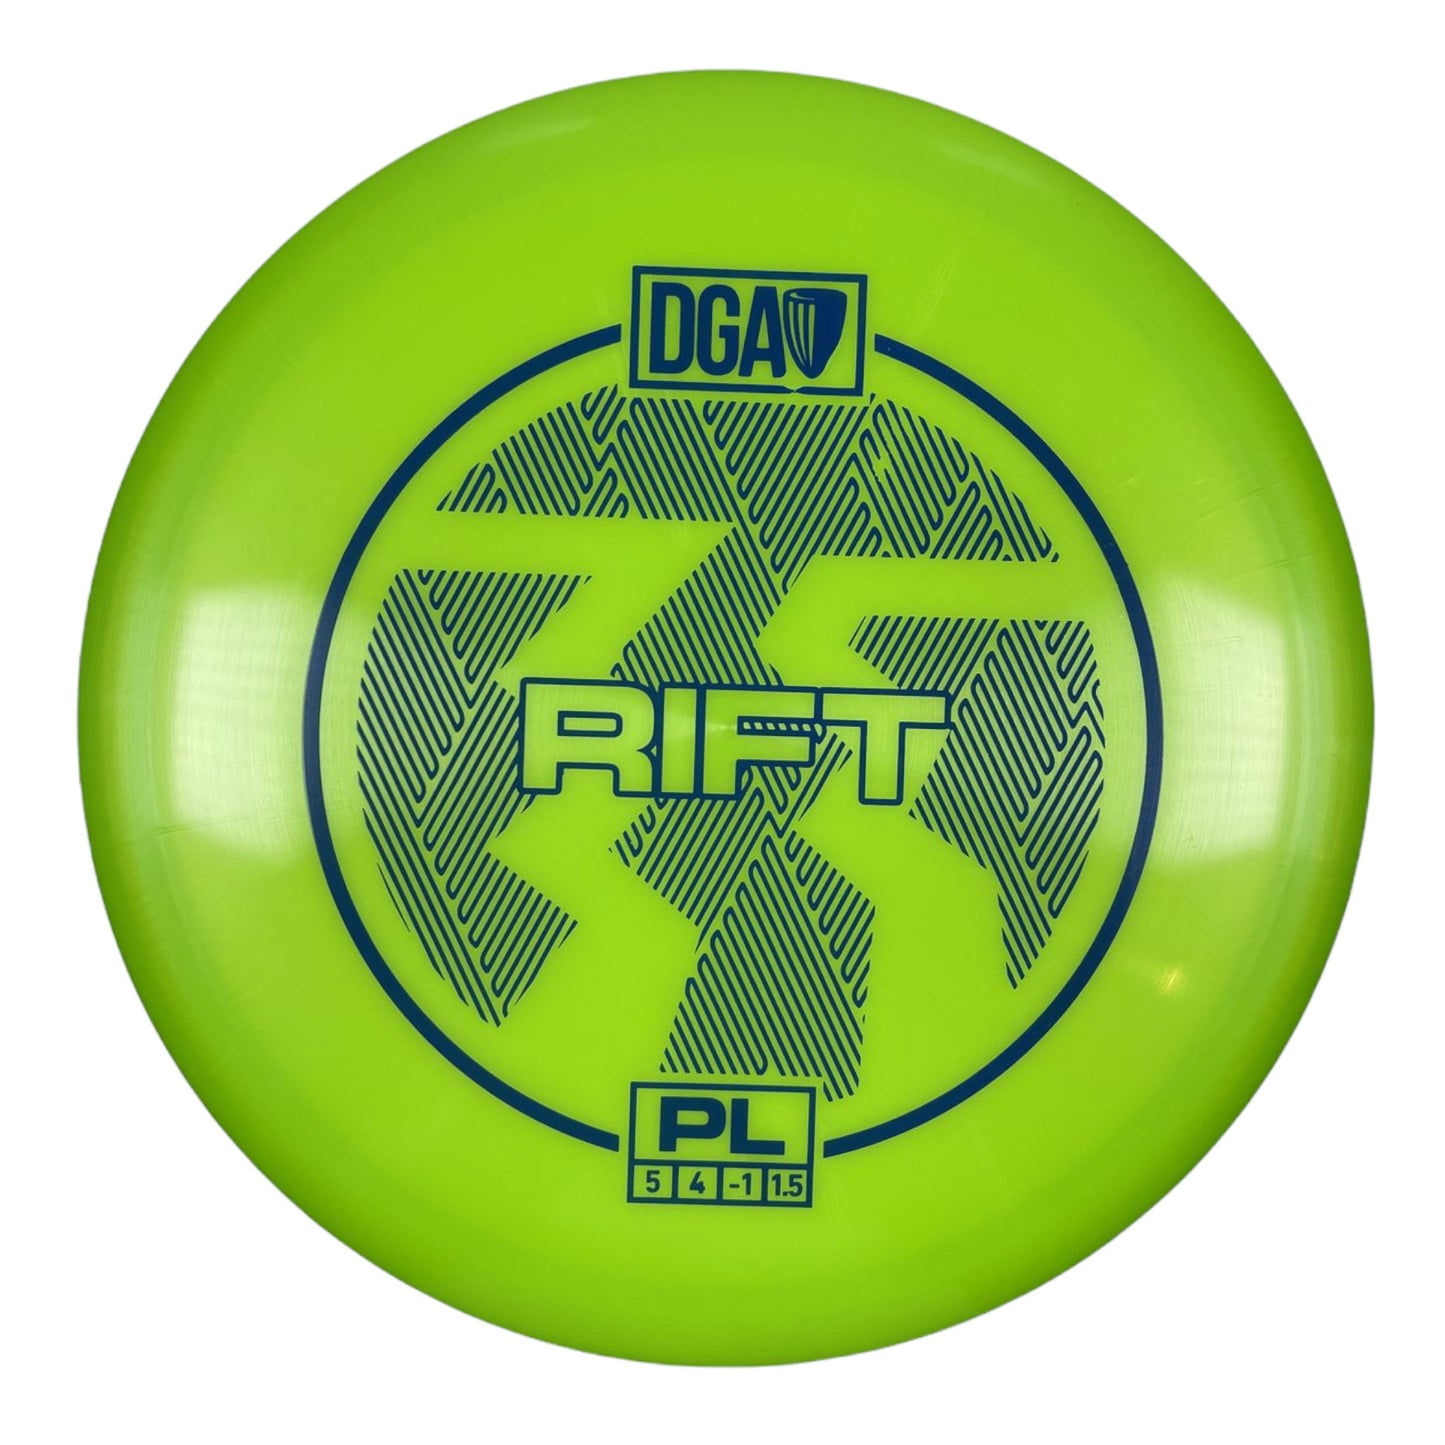 DGA Rift | PL | Green/Blue 177g Disc Golf